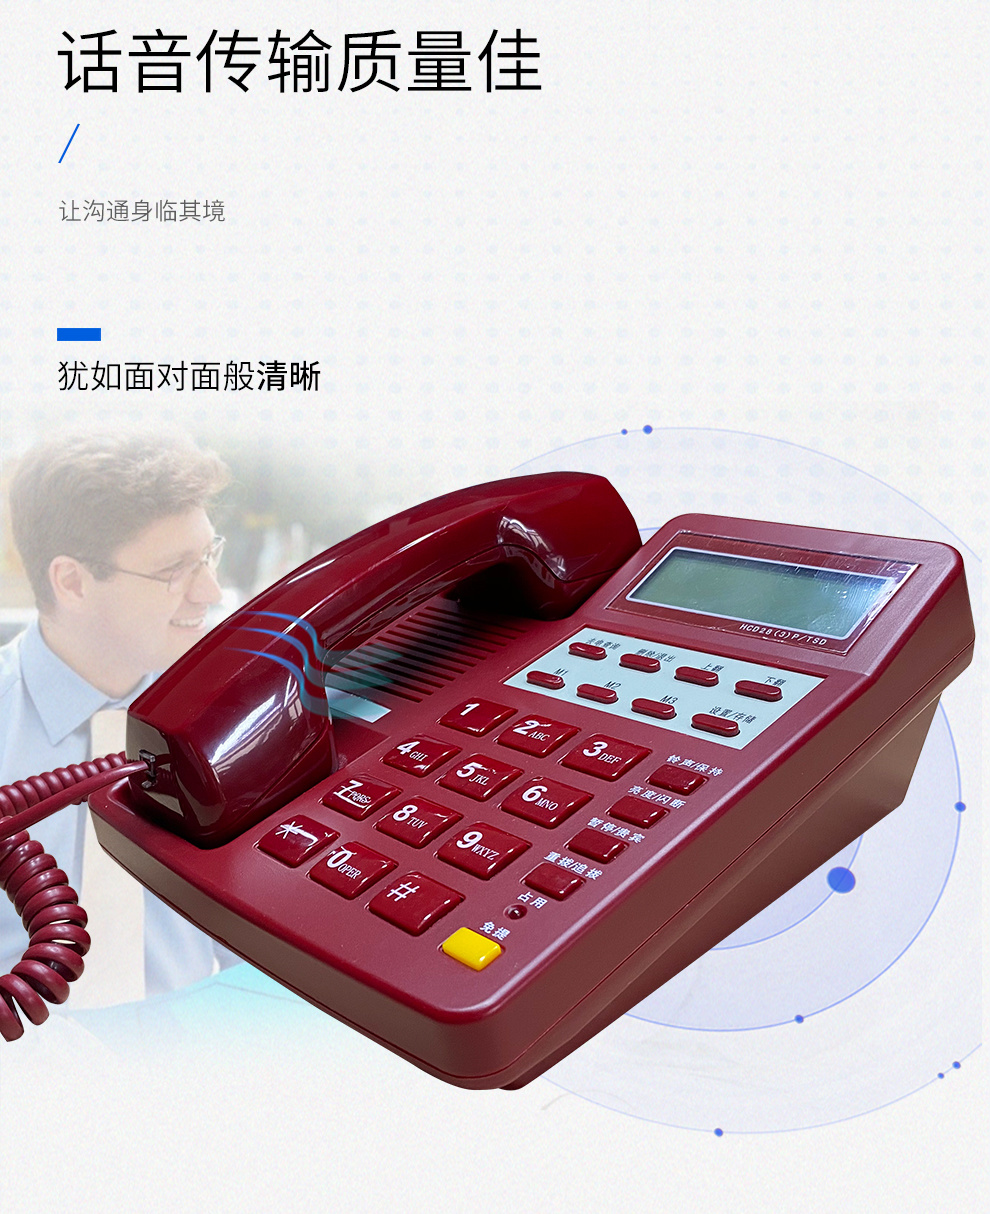 恒捷HCD28(3)P/TSD型 电话机白/红保密红白话机 政务话机 军政保密话机 话音传输质量好 可靠性高 防雷击示例图6